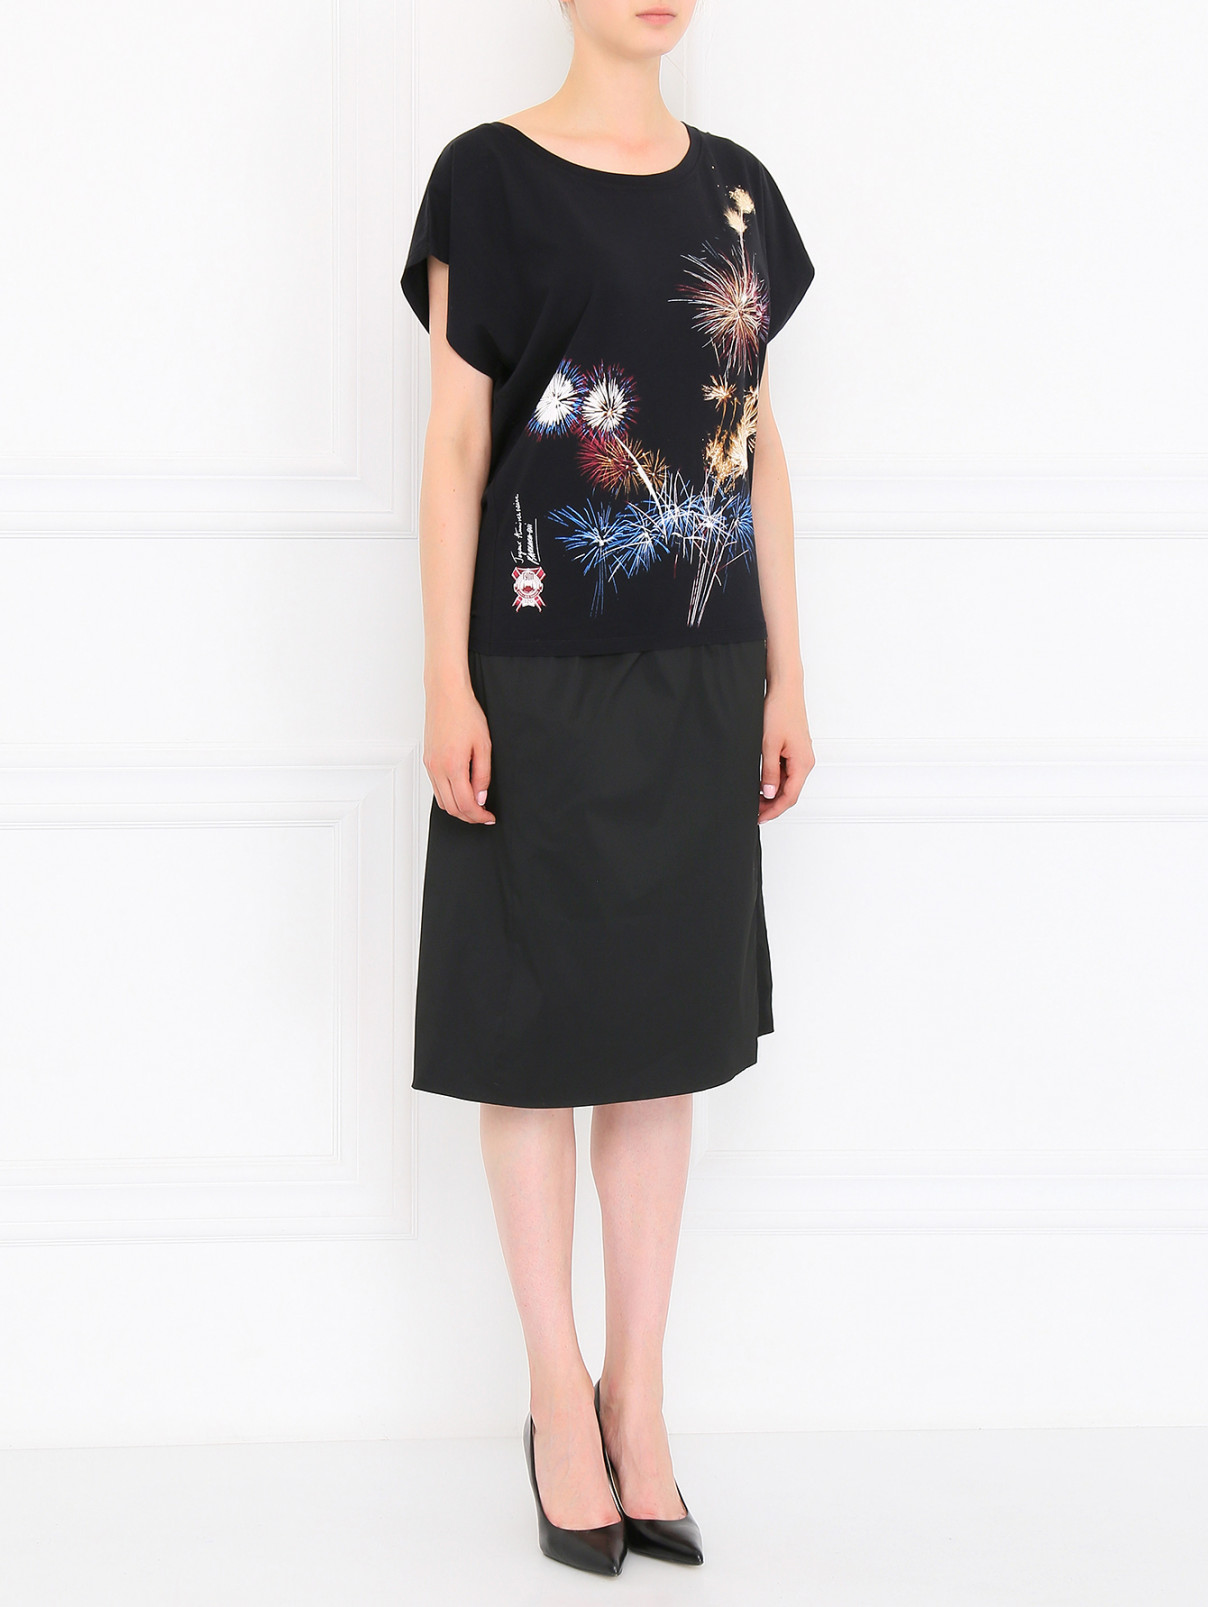 Двойная юбка с запахом La Perla  –  Модель Общий вид  – Цвет:  Черный